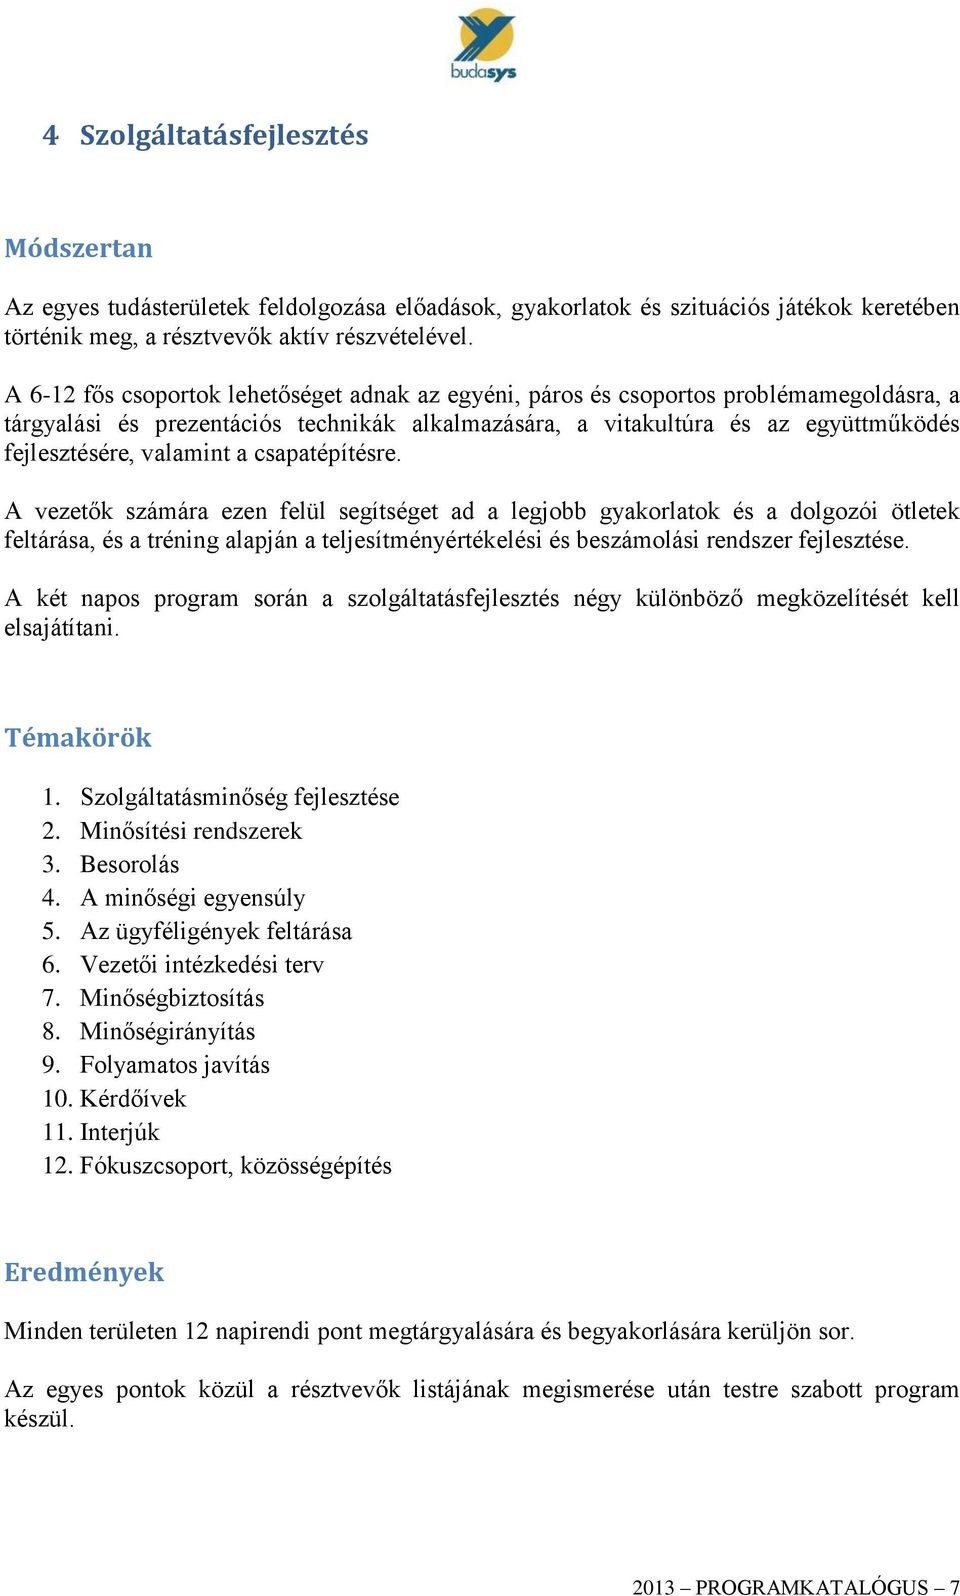 Szakmai csapatépítő programok - PDF Ingyenes letöltés